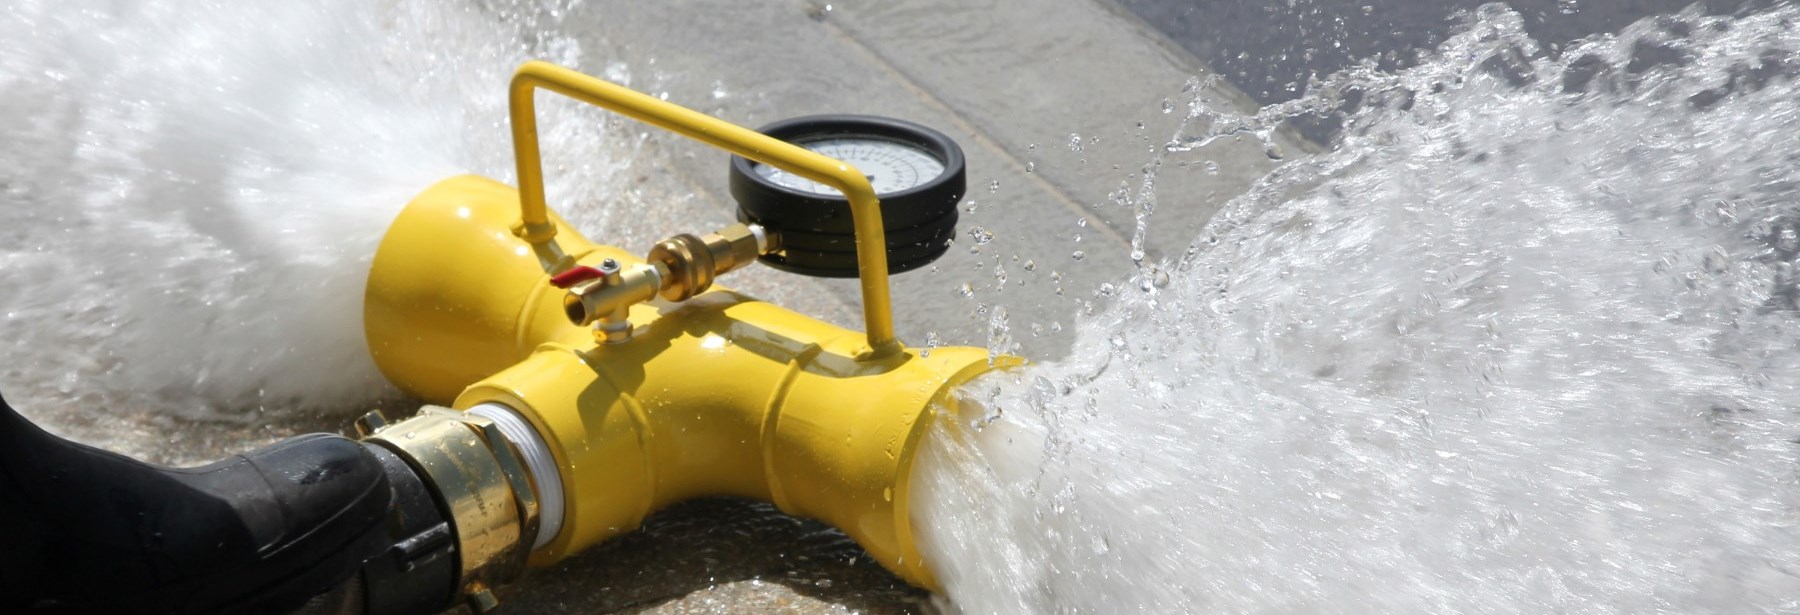 hydrant flushing program